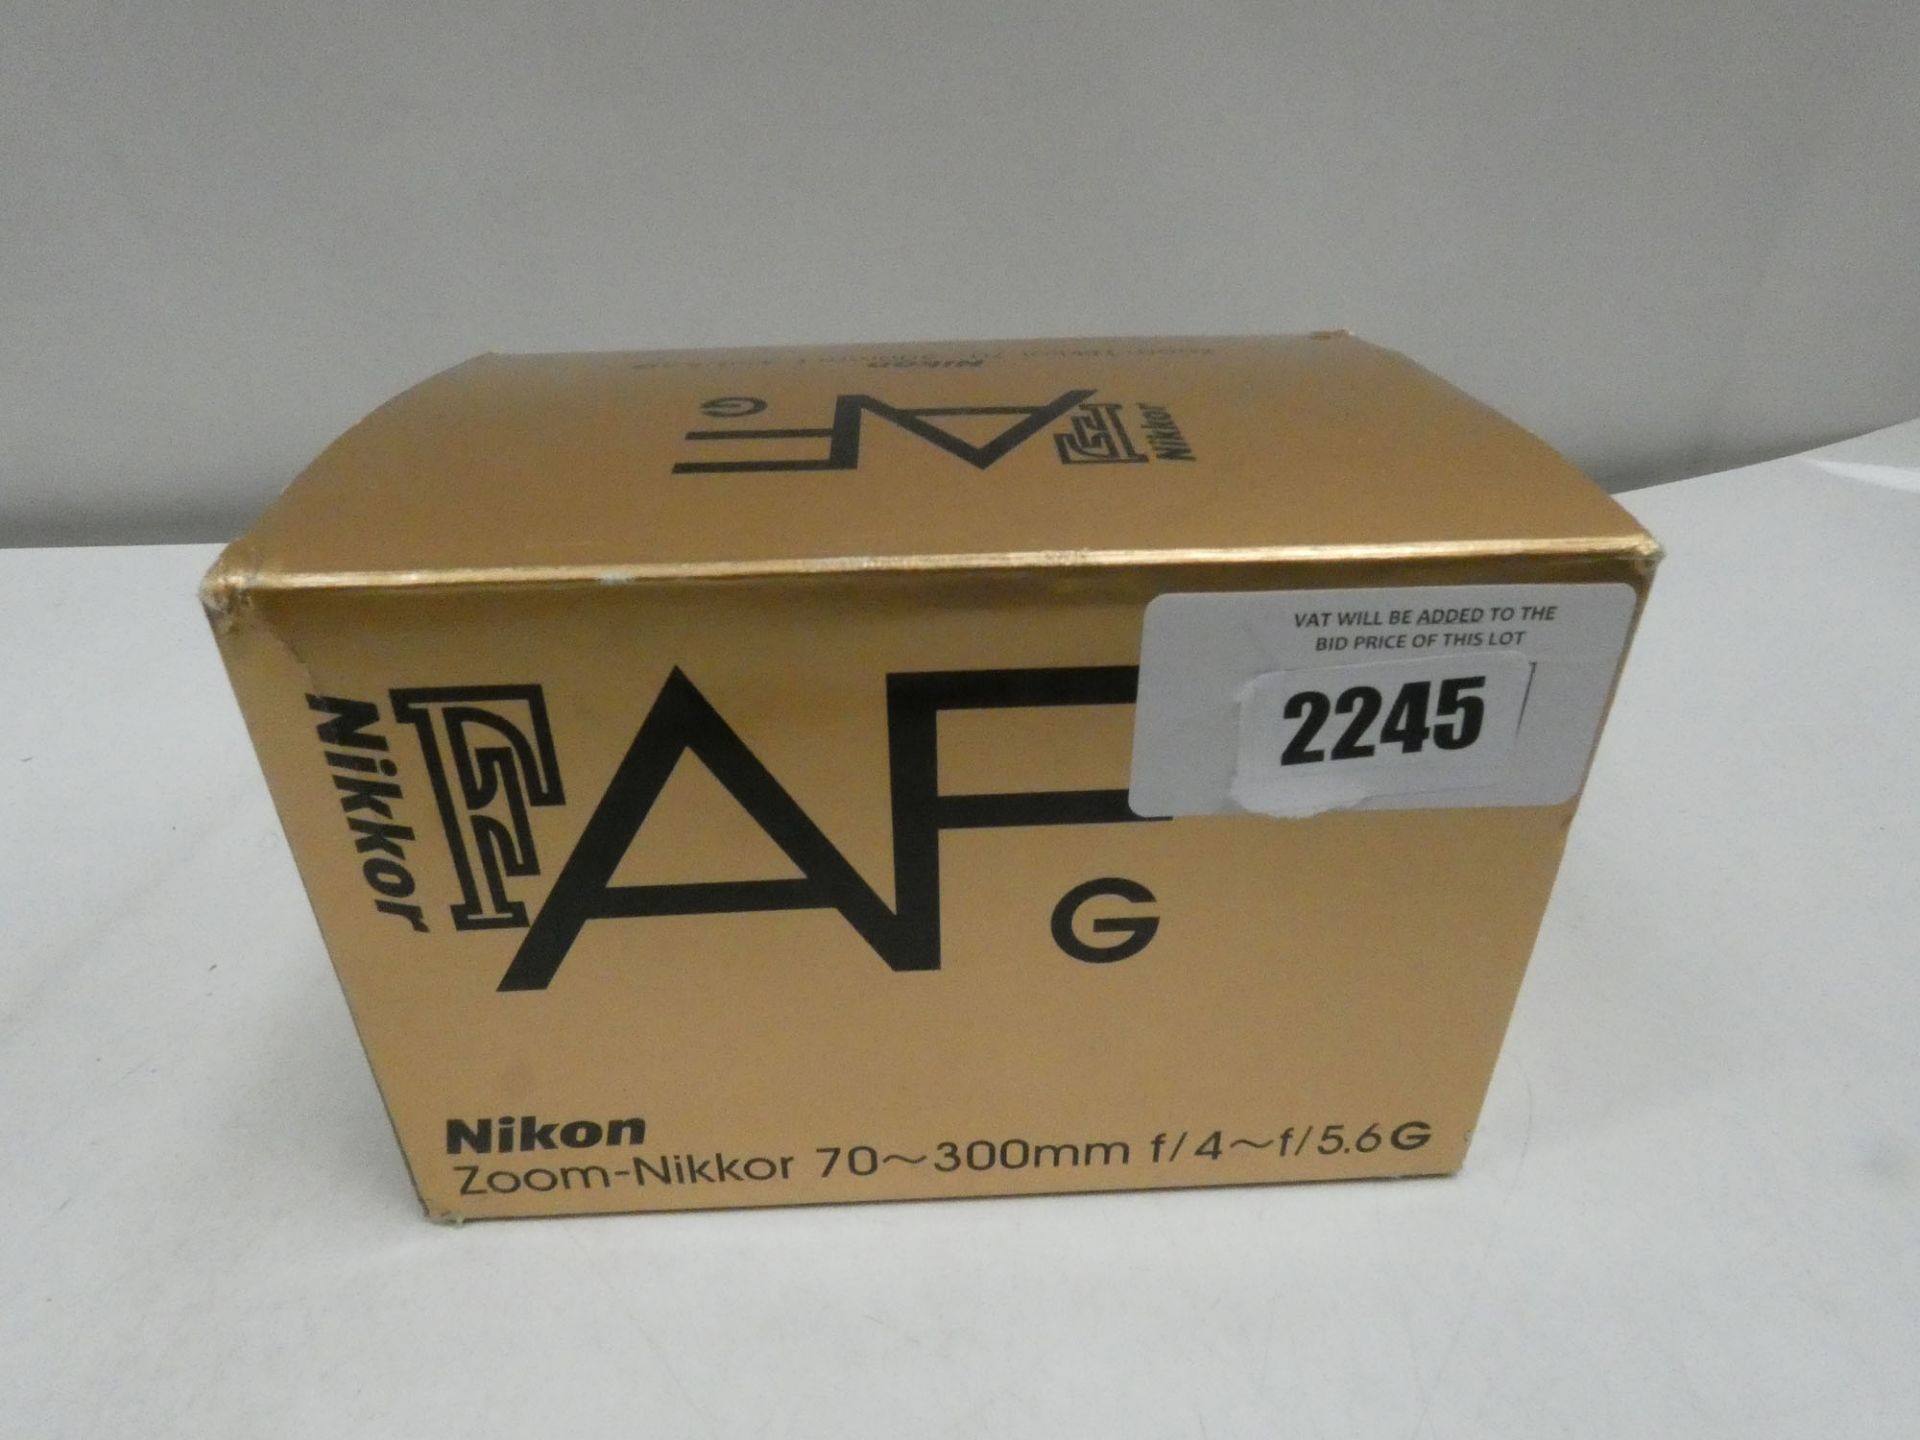 Nikon AFG Zoom-Nikkor 70-300mm f/4~f/5.6G lens